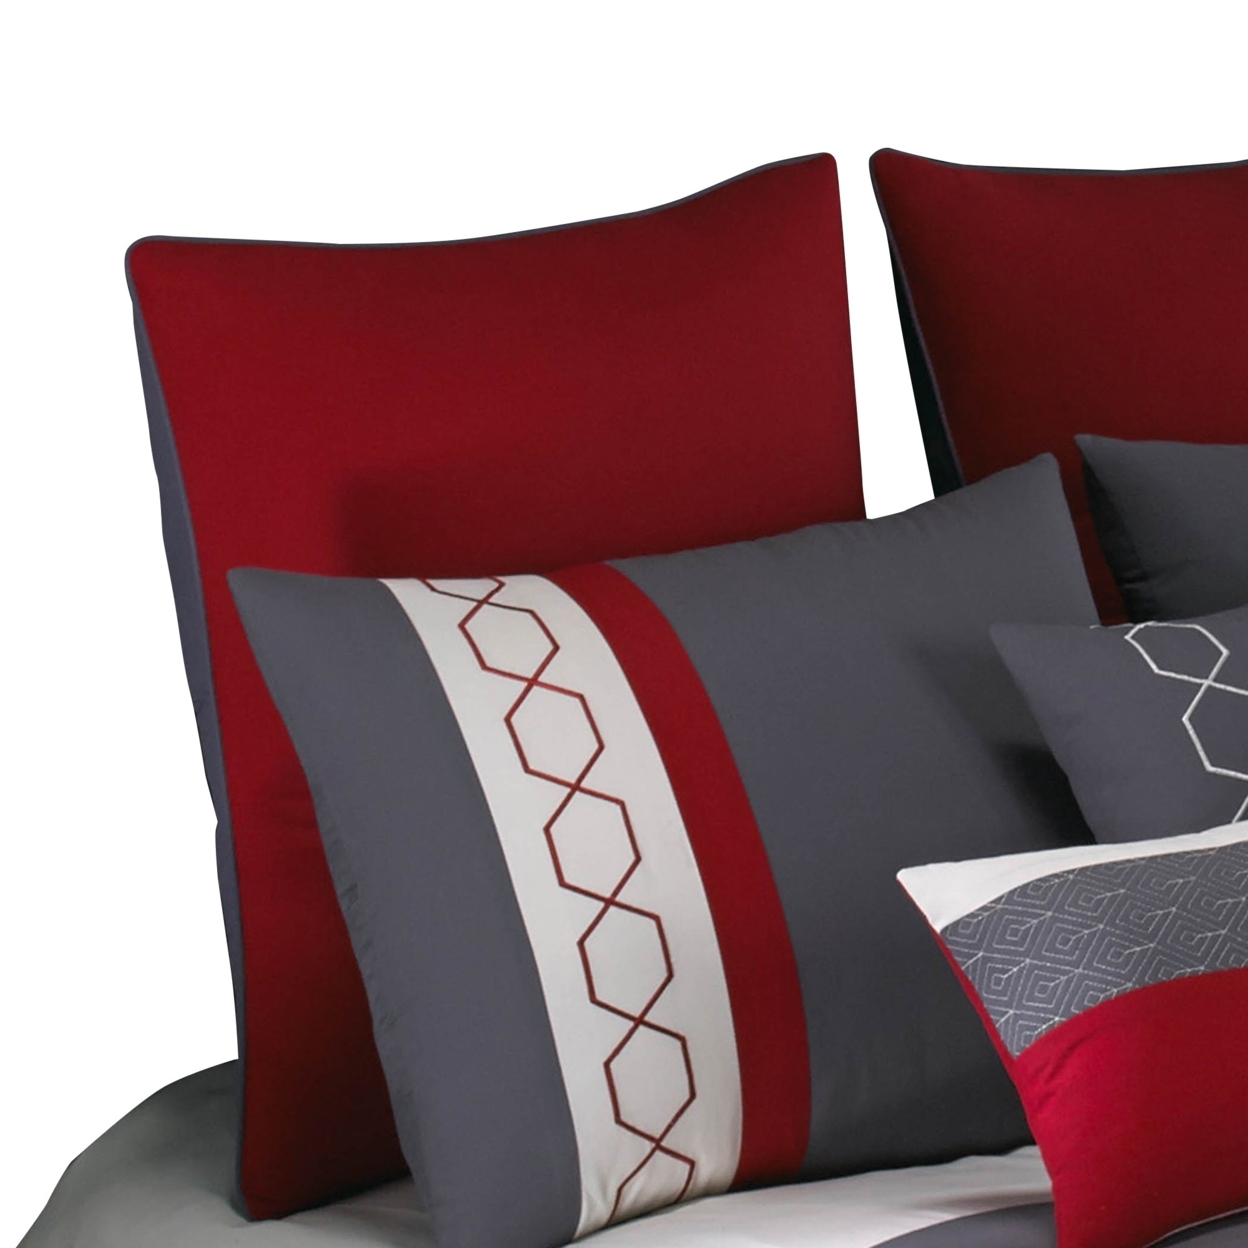 8 Piece King Comforter Set With Printed Trellis Pattern, Red- Saltoro Sherpi